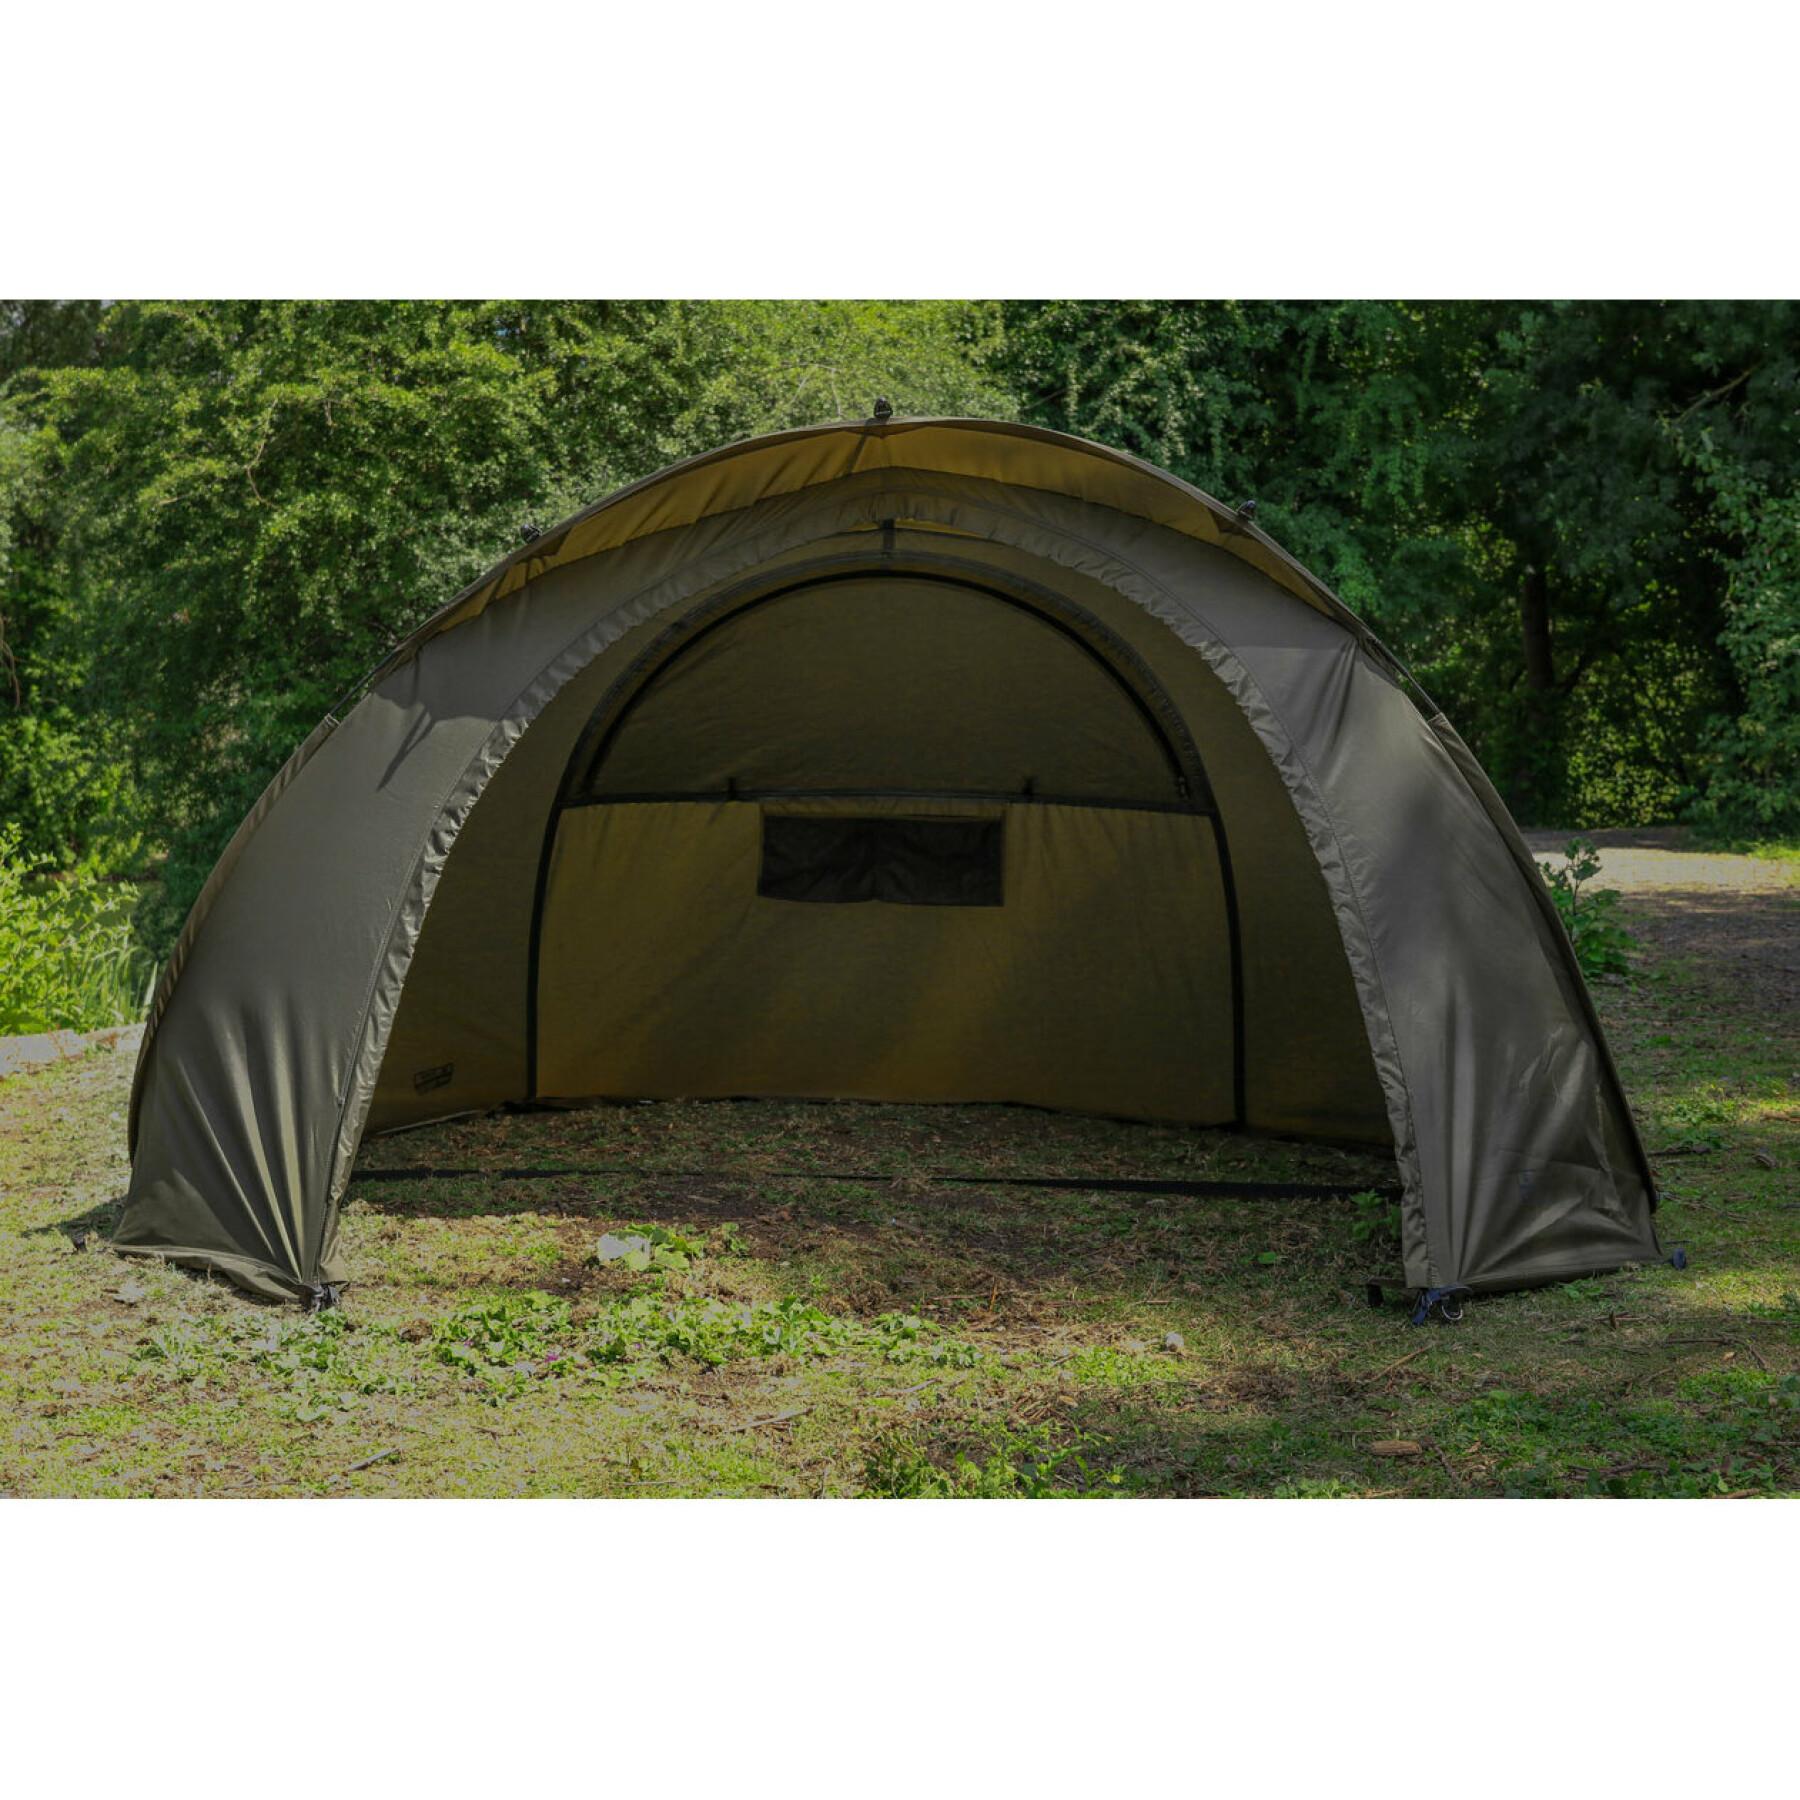 Easy shelter tent Fox